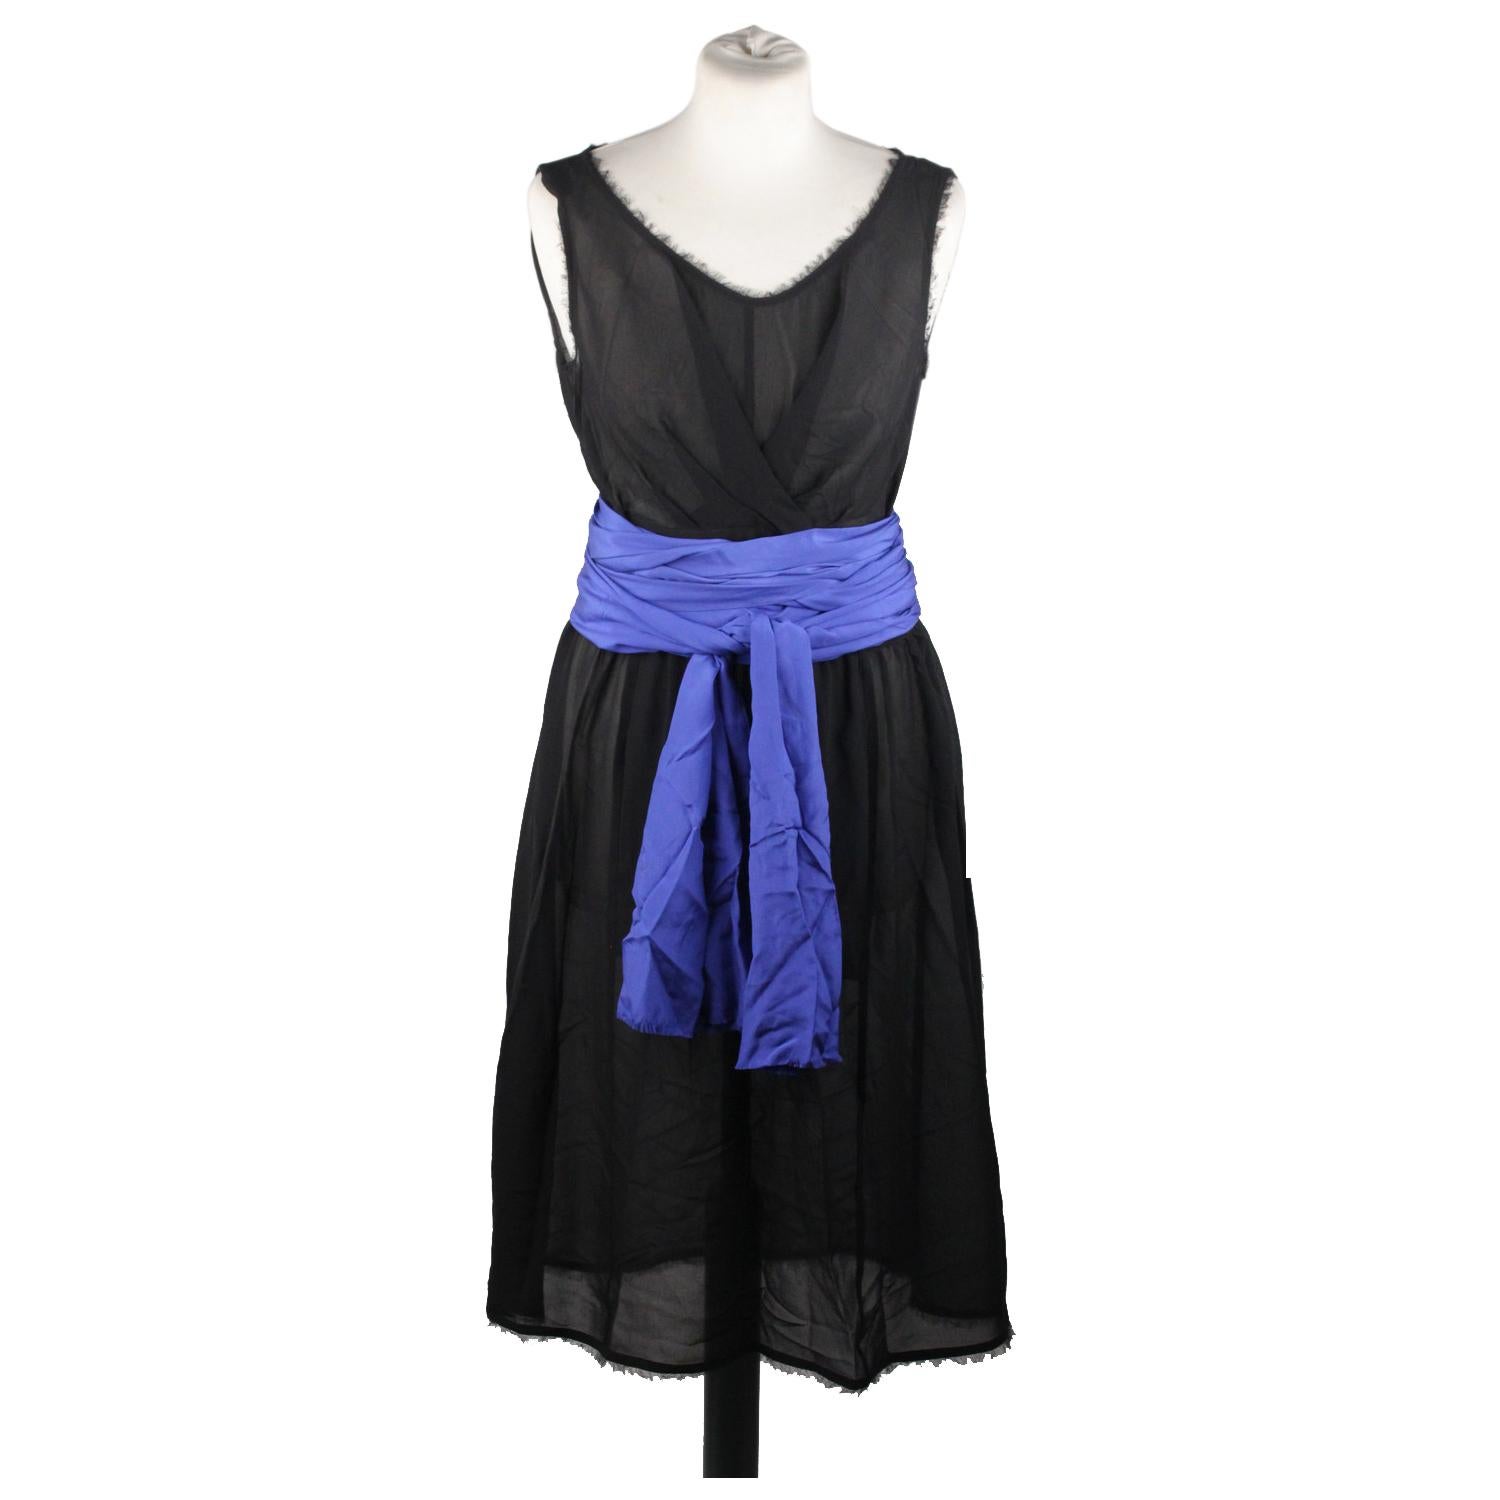 black dress with blue belt